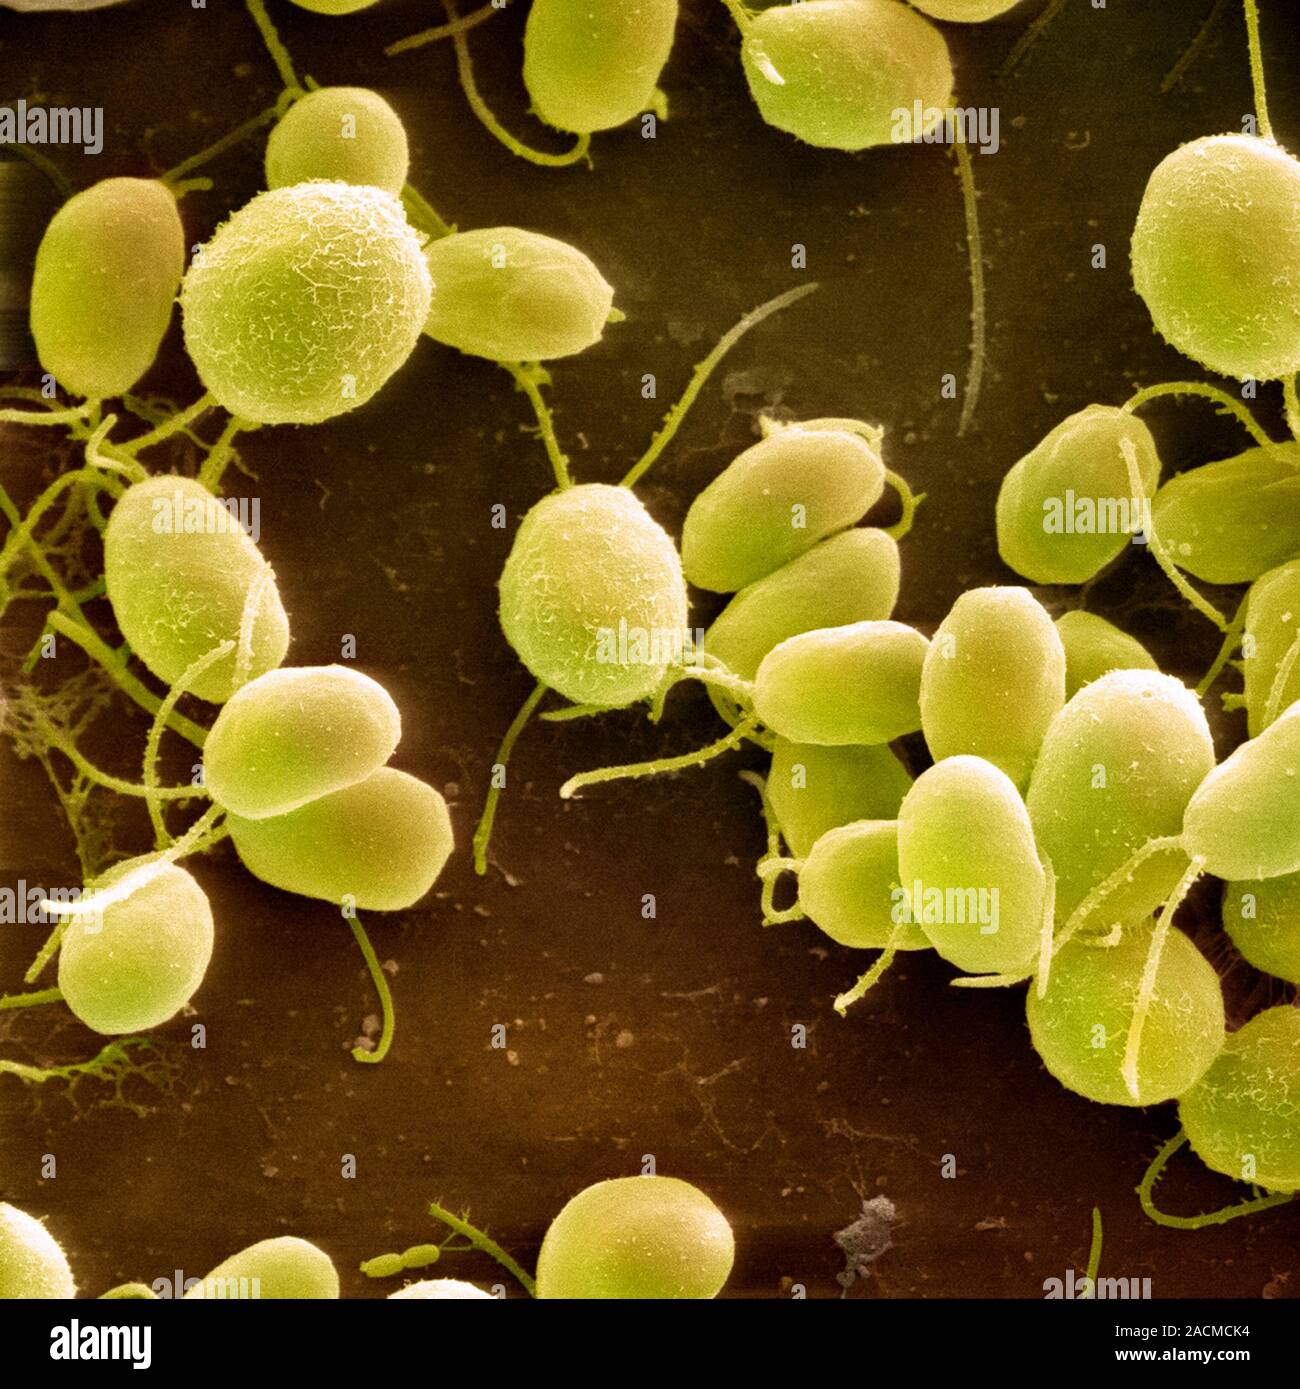 Chlamydomona reinhardtii green algae. Coloured scanning electron ...